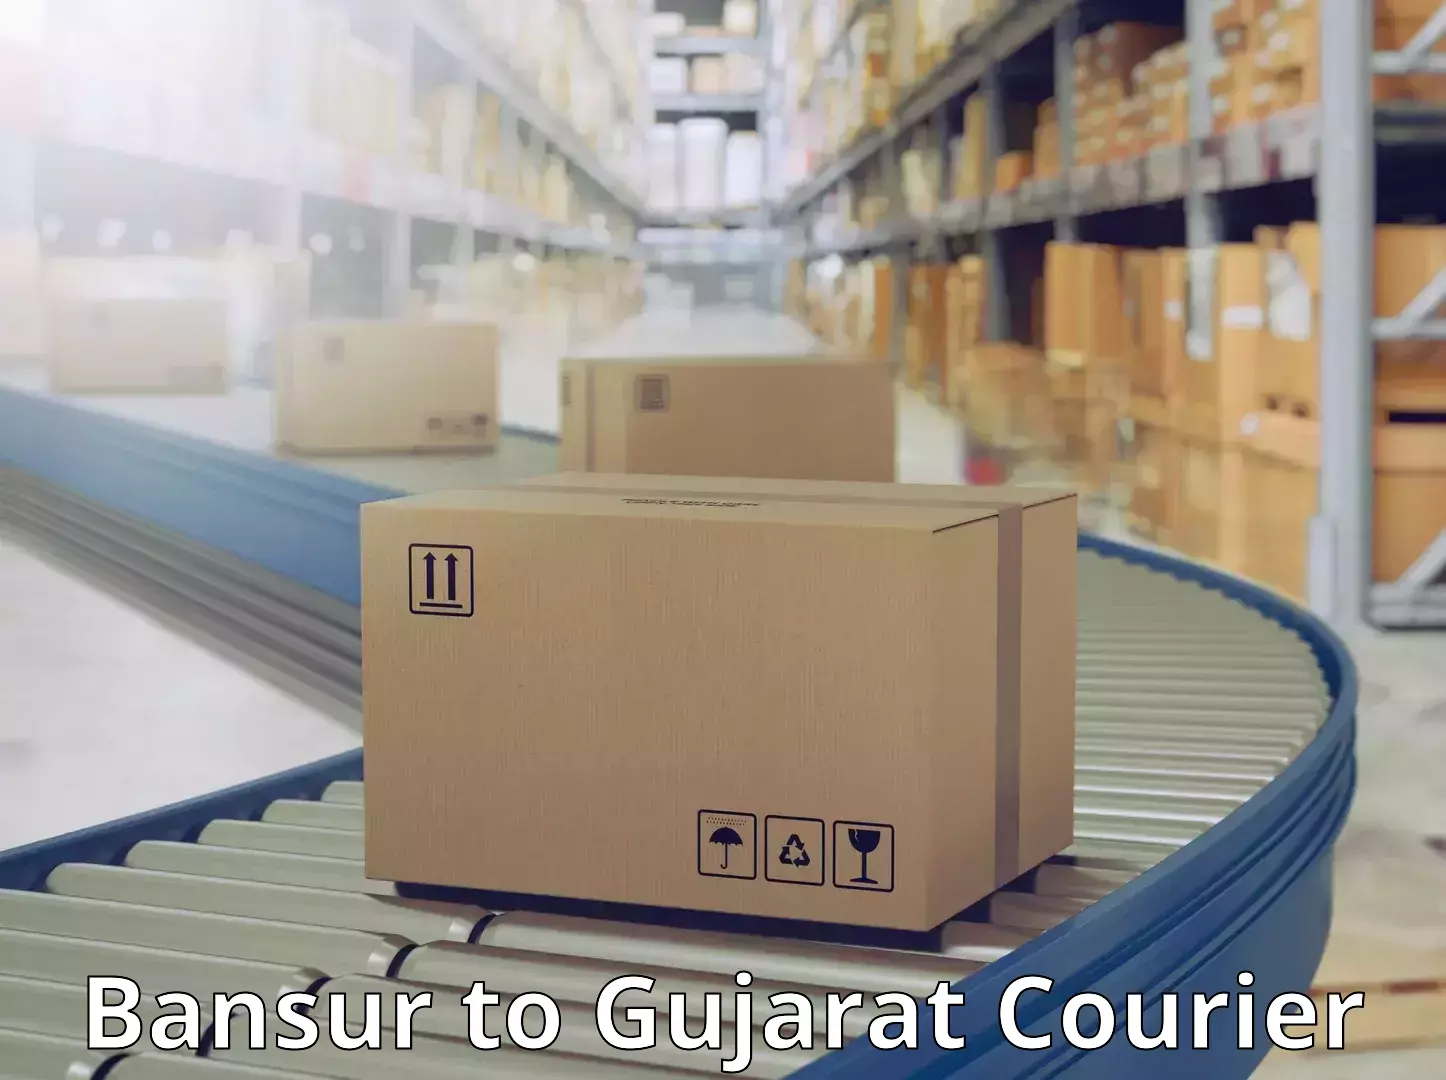 24-hour courier service Bansur to Gujarat